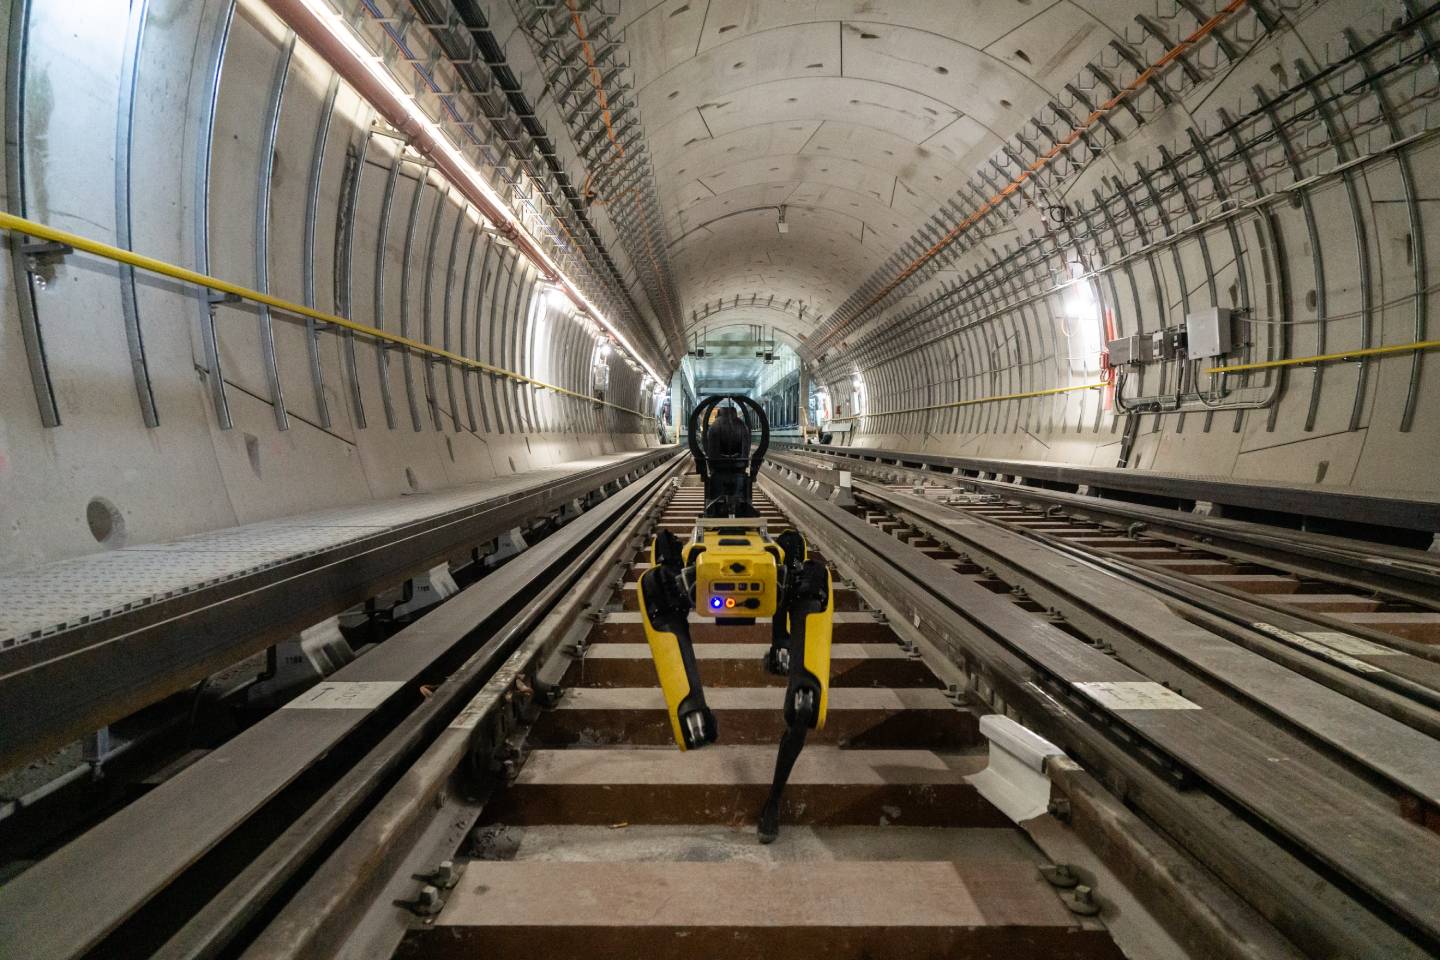 An agile mobile robot on subway tracks